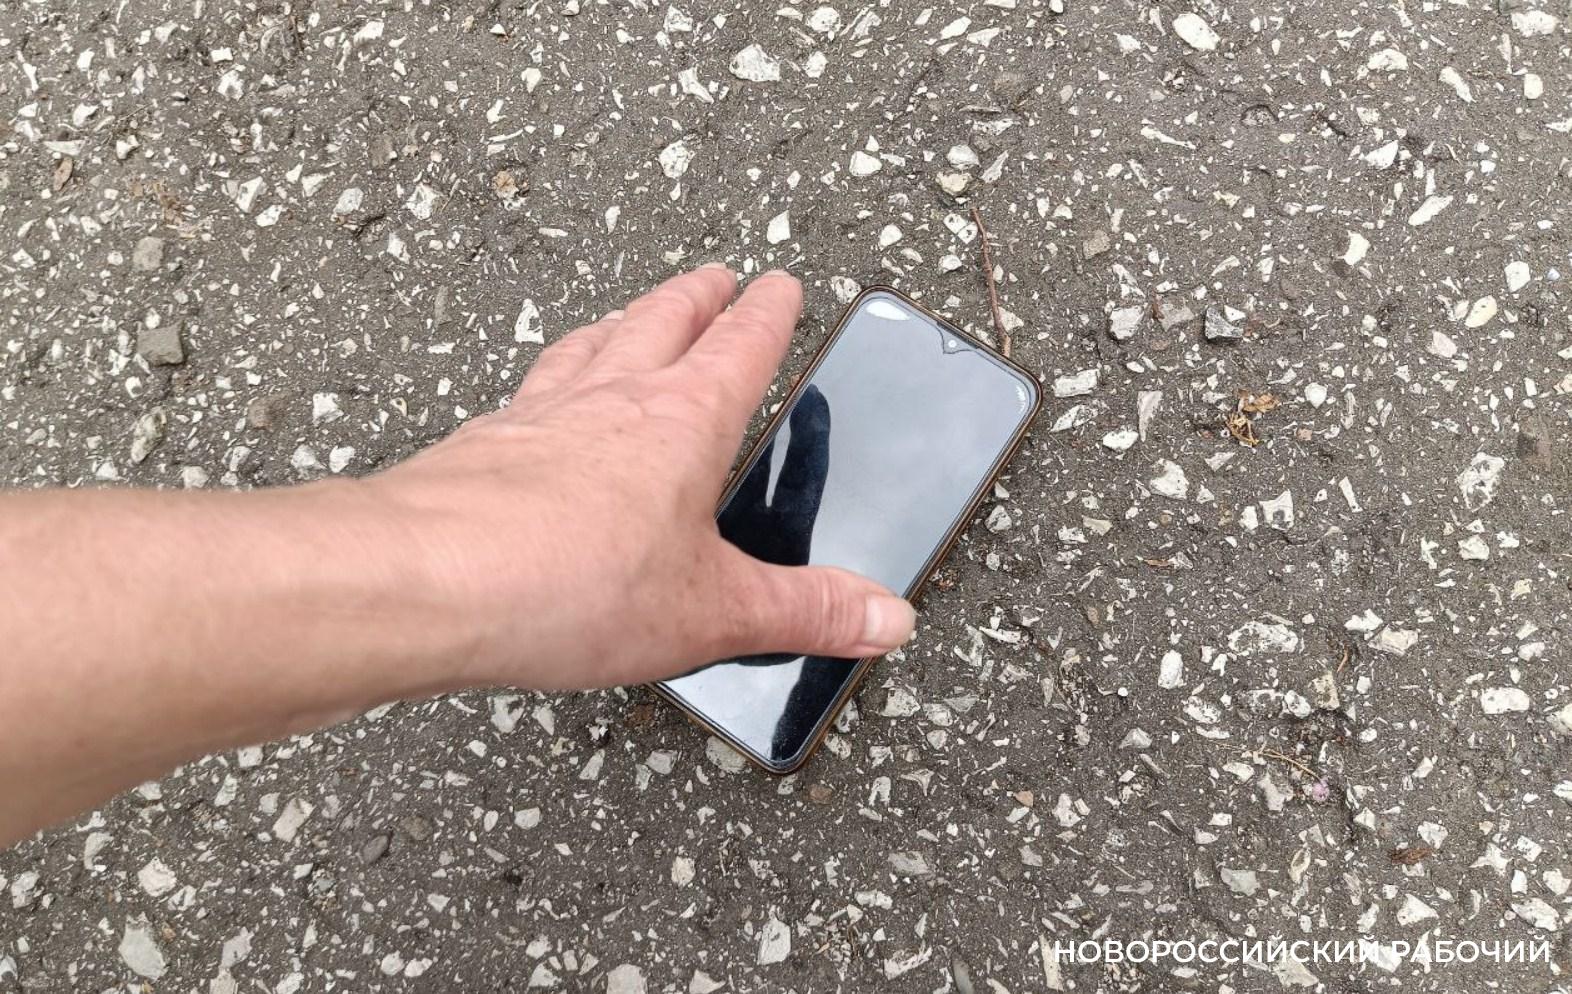 Купить телефон в новороссийске. Нашел разбитый телефон на улице. Украли телефон у слепого. Разбил телефон экран из кармана выпал. Мужик украл телефон.